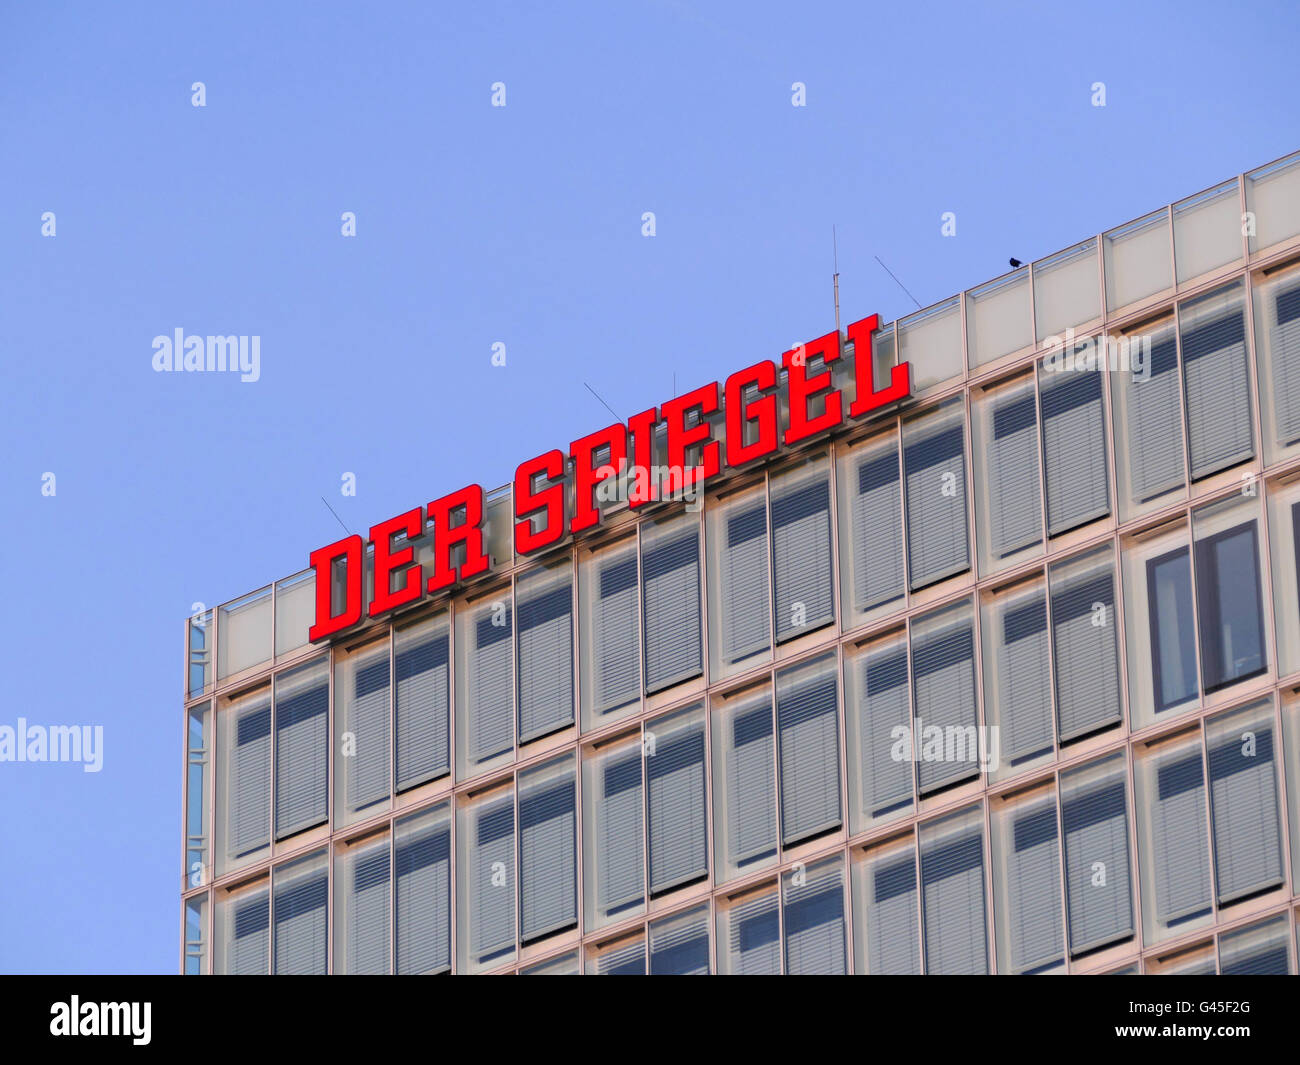 Europe Germany Hamburg Der Spiegel magazine headquarter Stock Photo